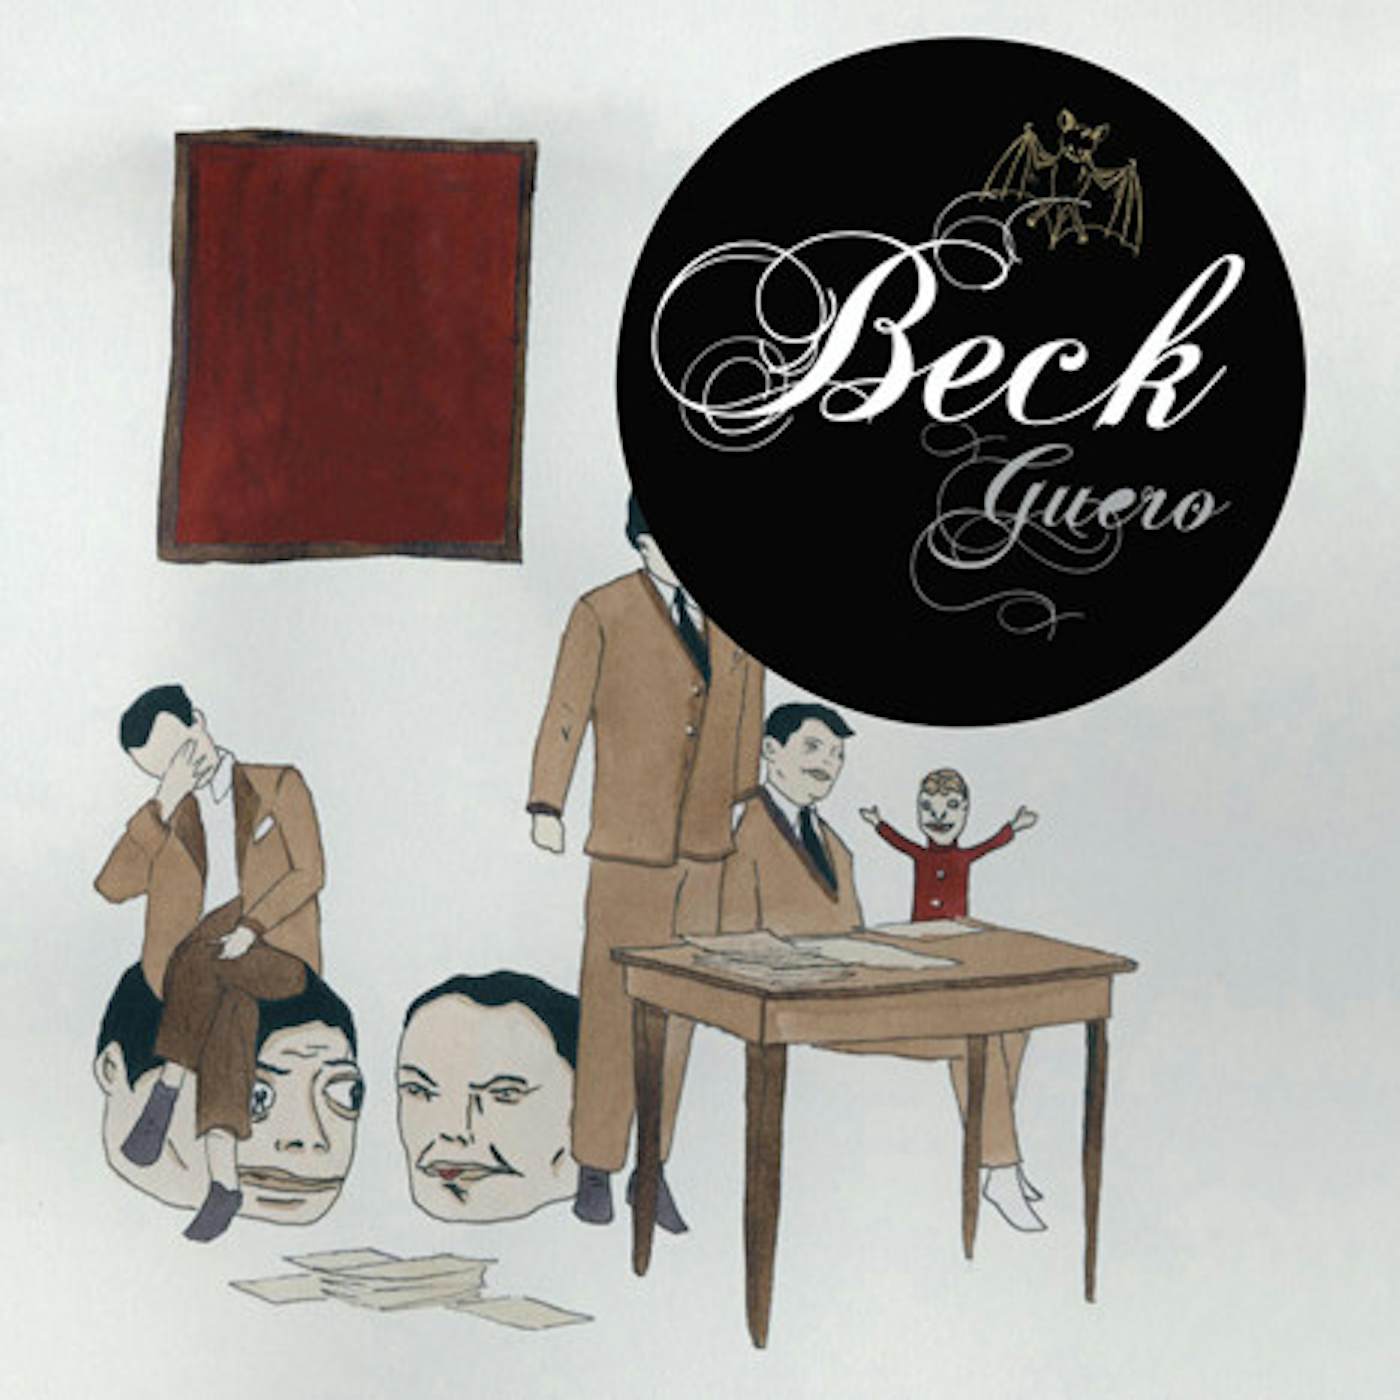 Beck Guero Vinyl Record